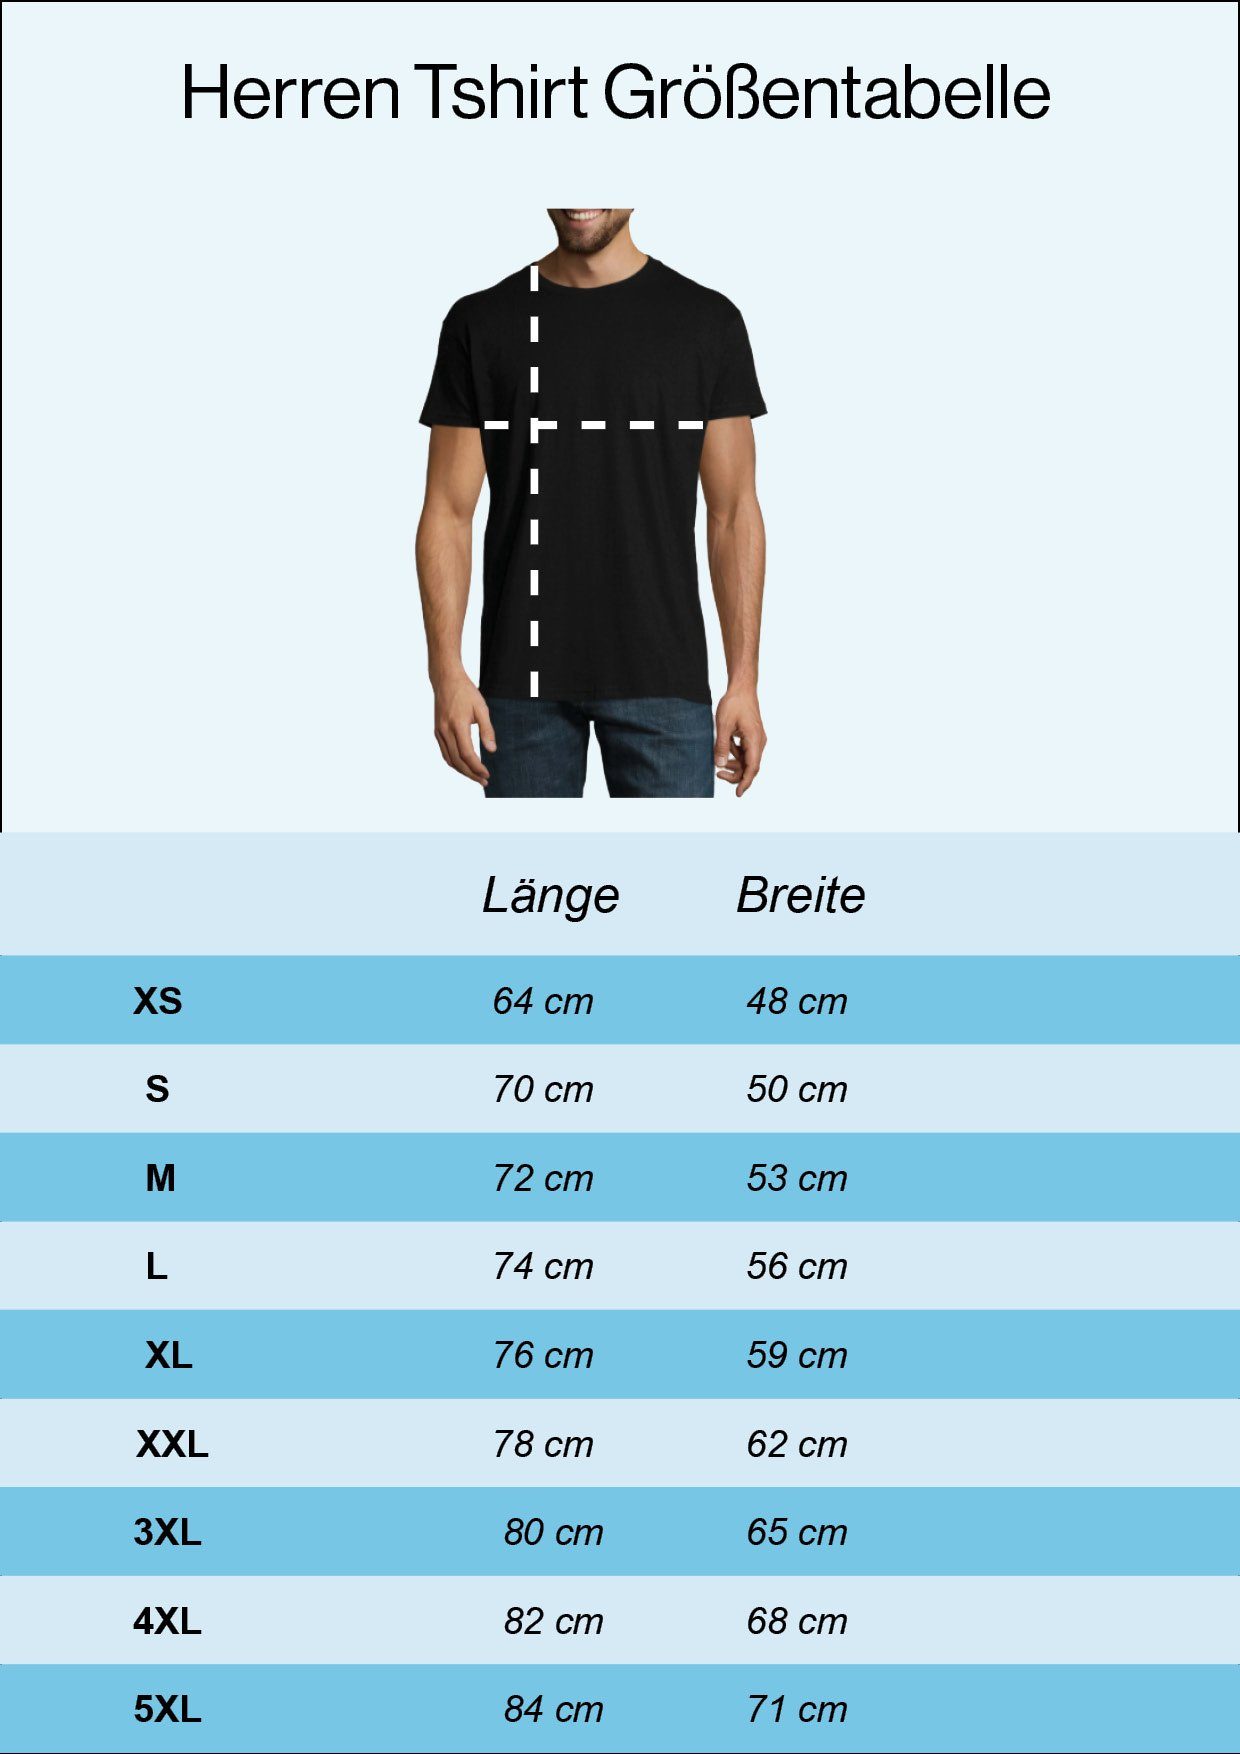 Youth Designz T-Shirt Skelett Hand Herren Frontdruck Grau Rock'n'Roll Trendigem Fun-Look Horror im mit T-Shirt